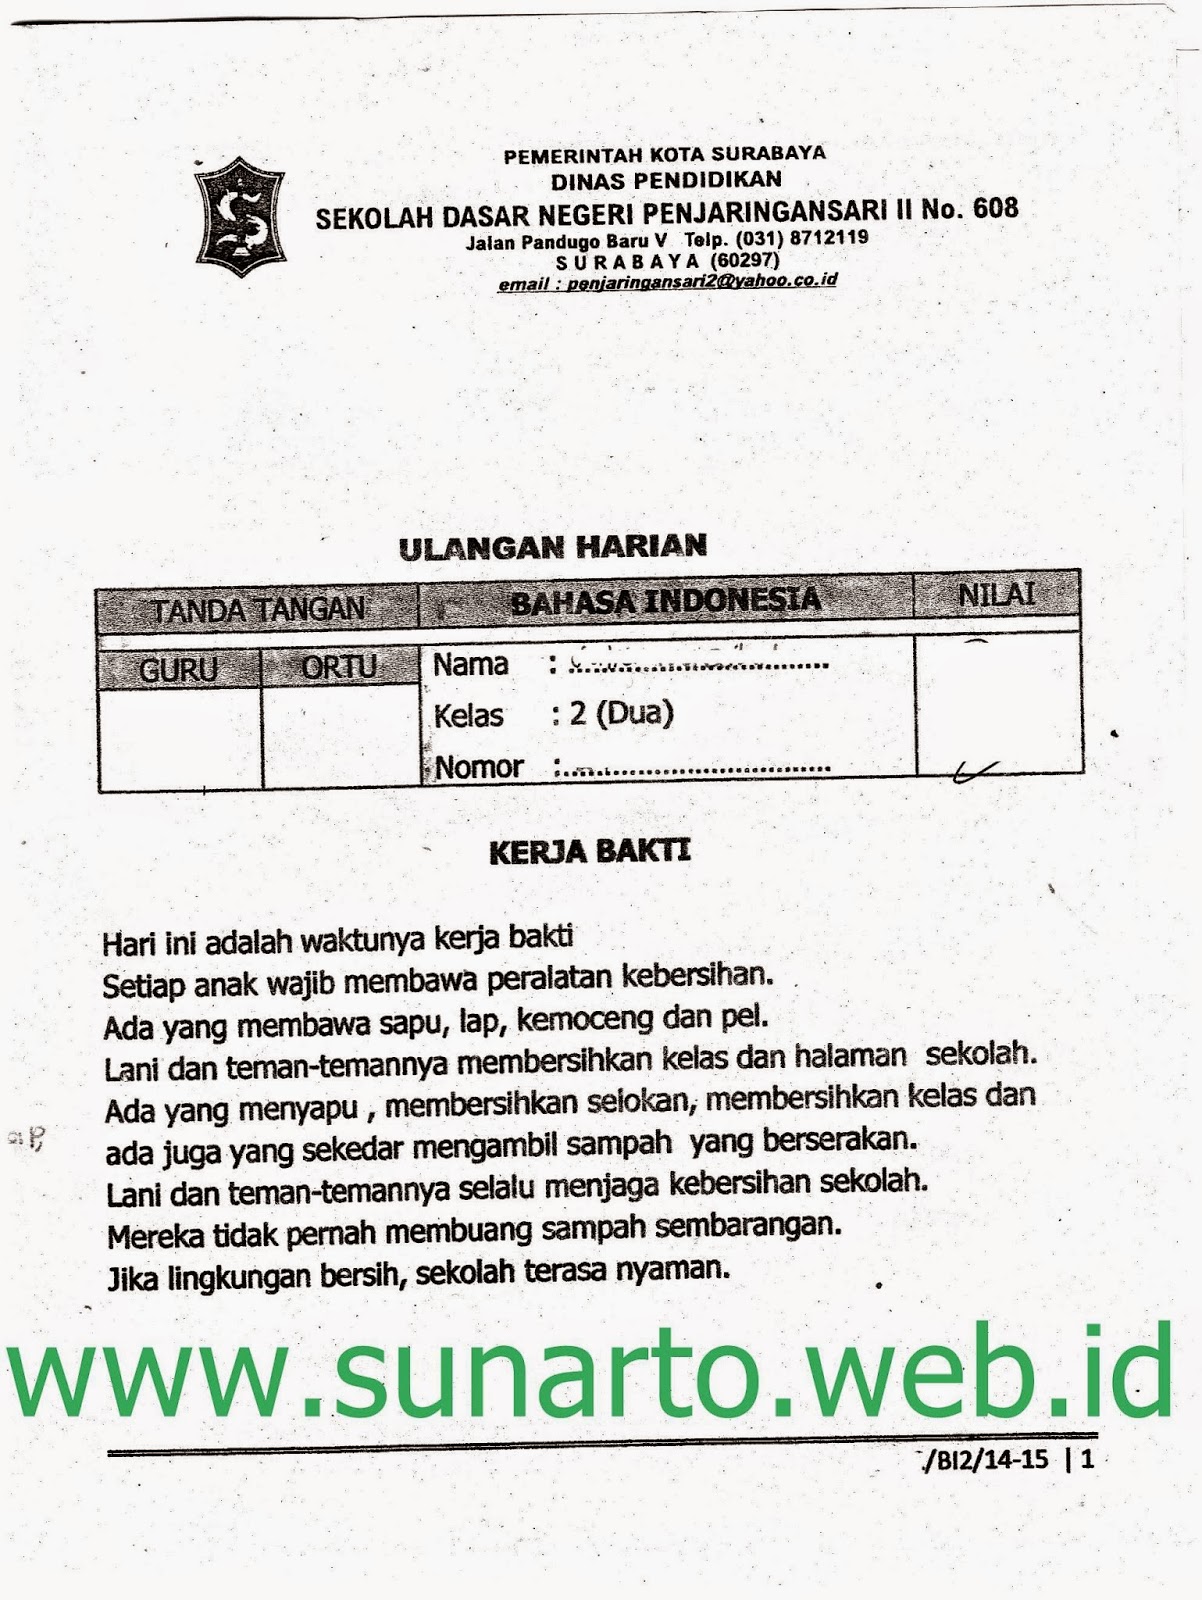 Ulangan Harian Semester Ganjil Bahasa Indonesia Kelas 2 SD TA 2014 2015 Kurikulum 2013